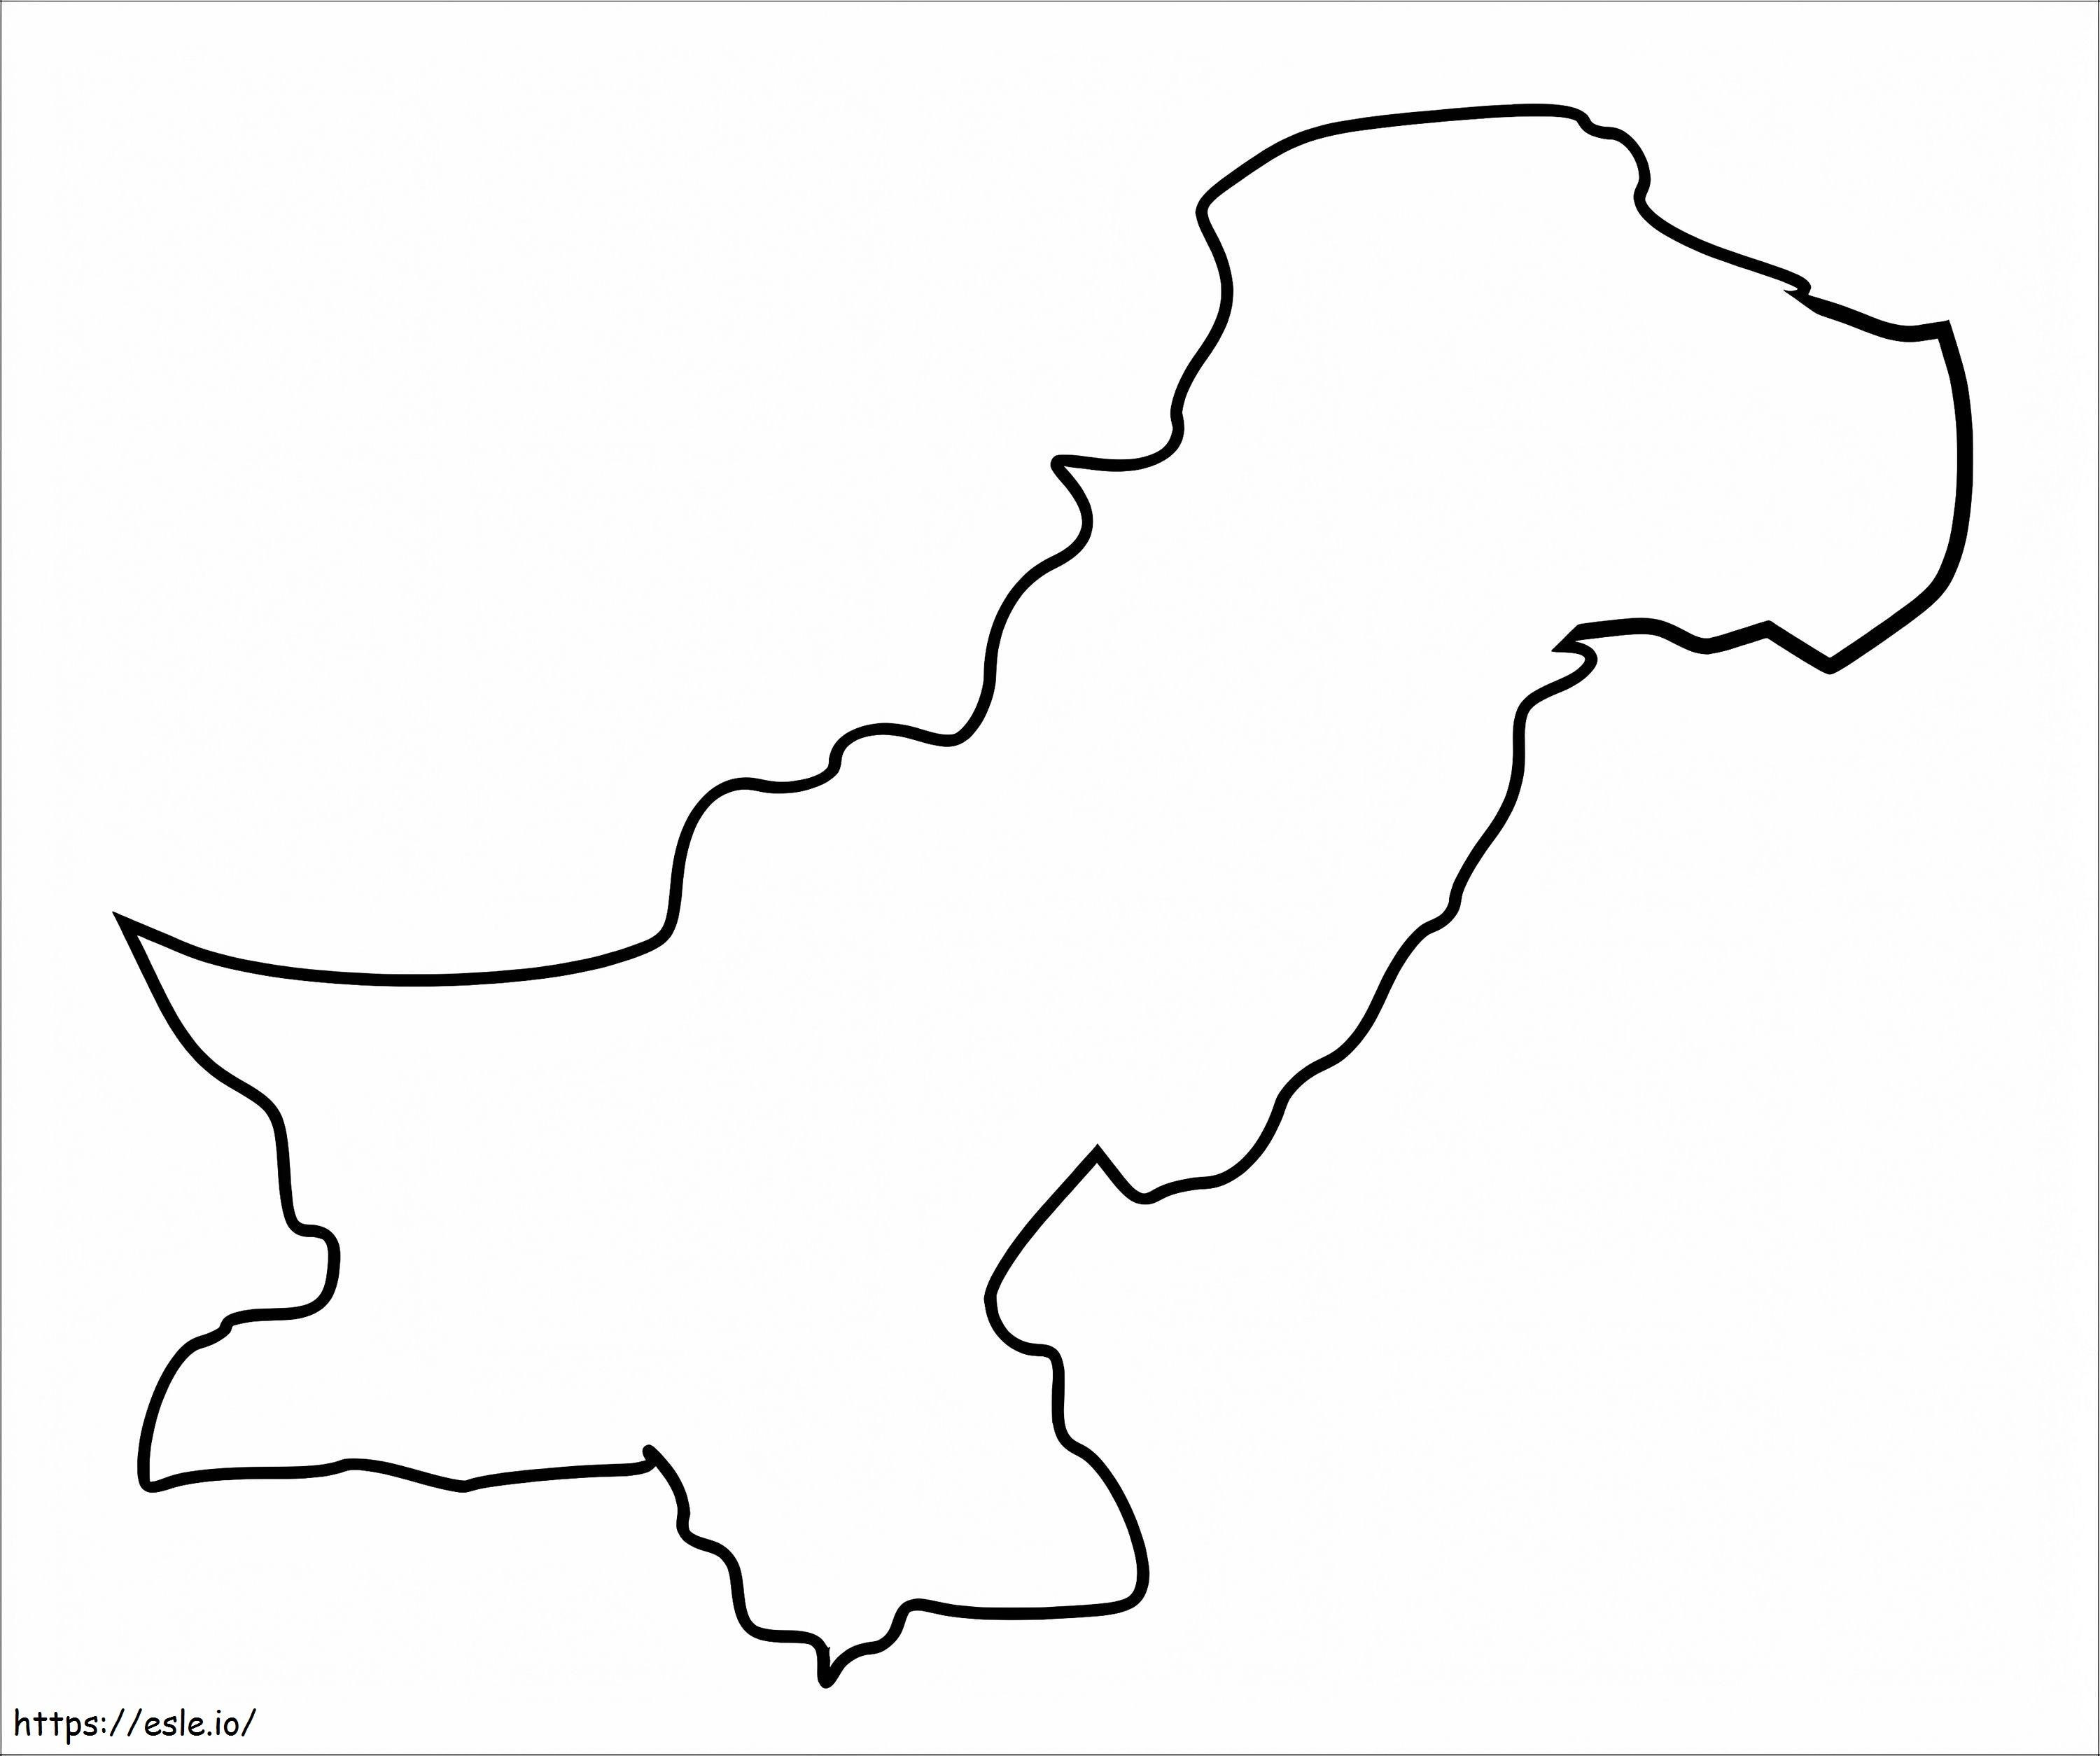 Coloriage Aperçu de la carte du Pakistan à imprimer dessin